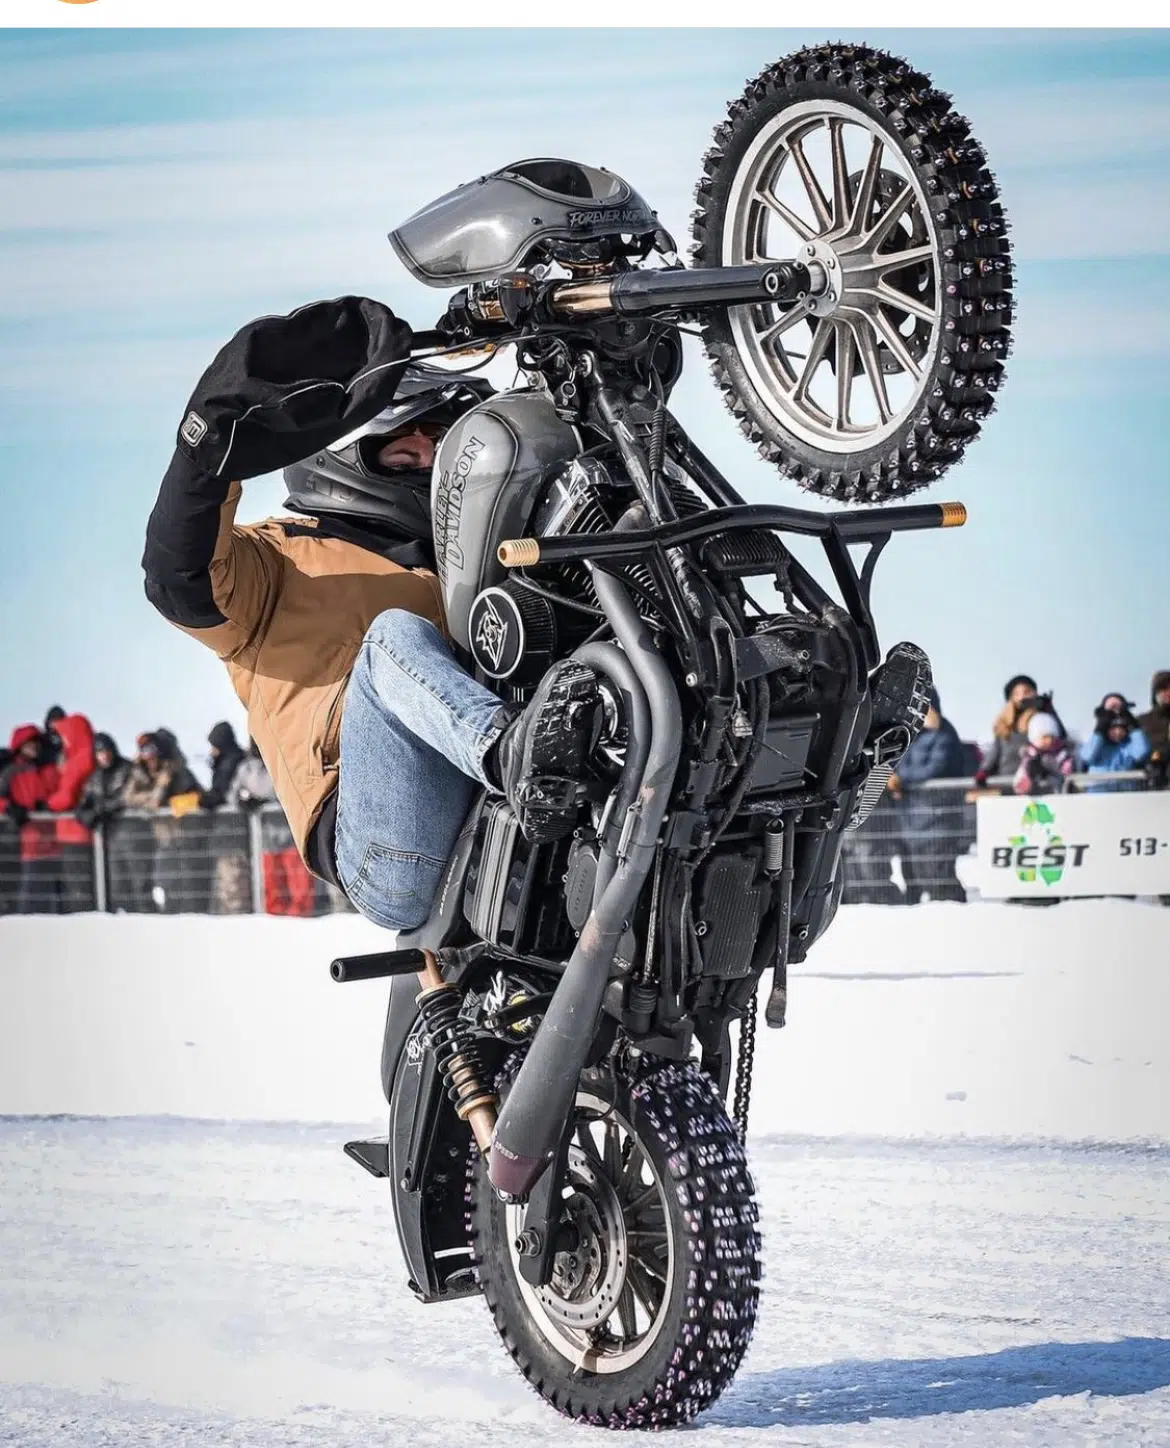 Les prouesses du Harley Drag Race on Ice de Beauharnois